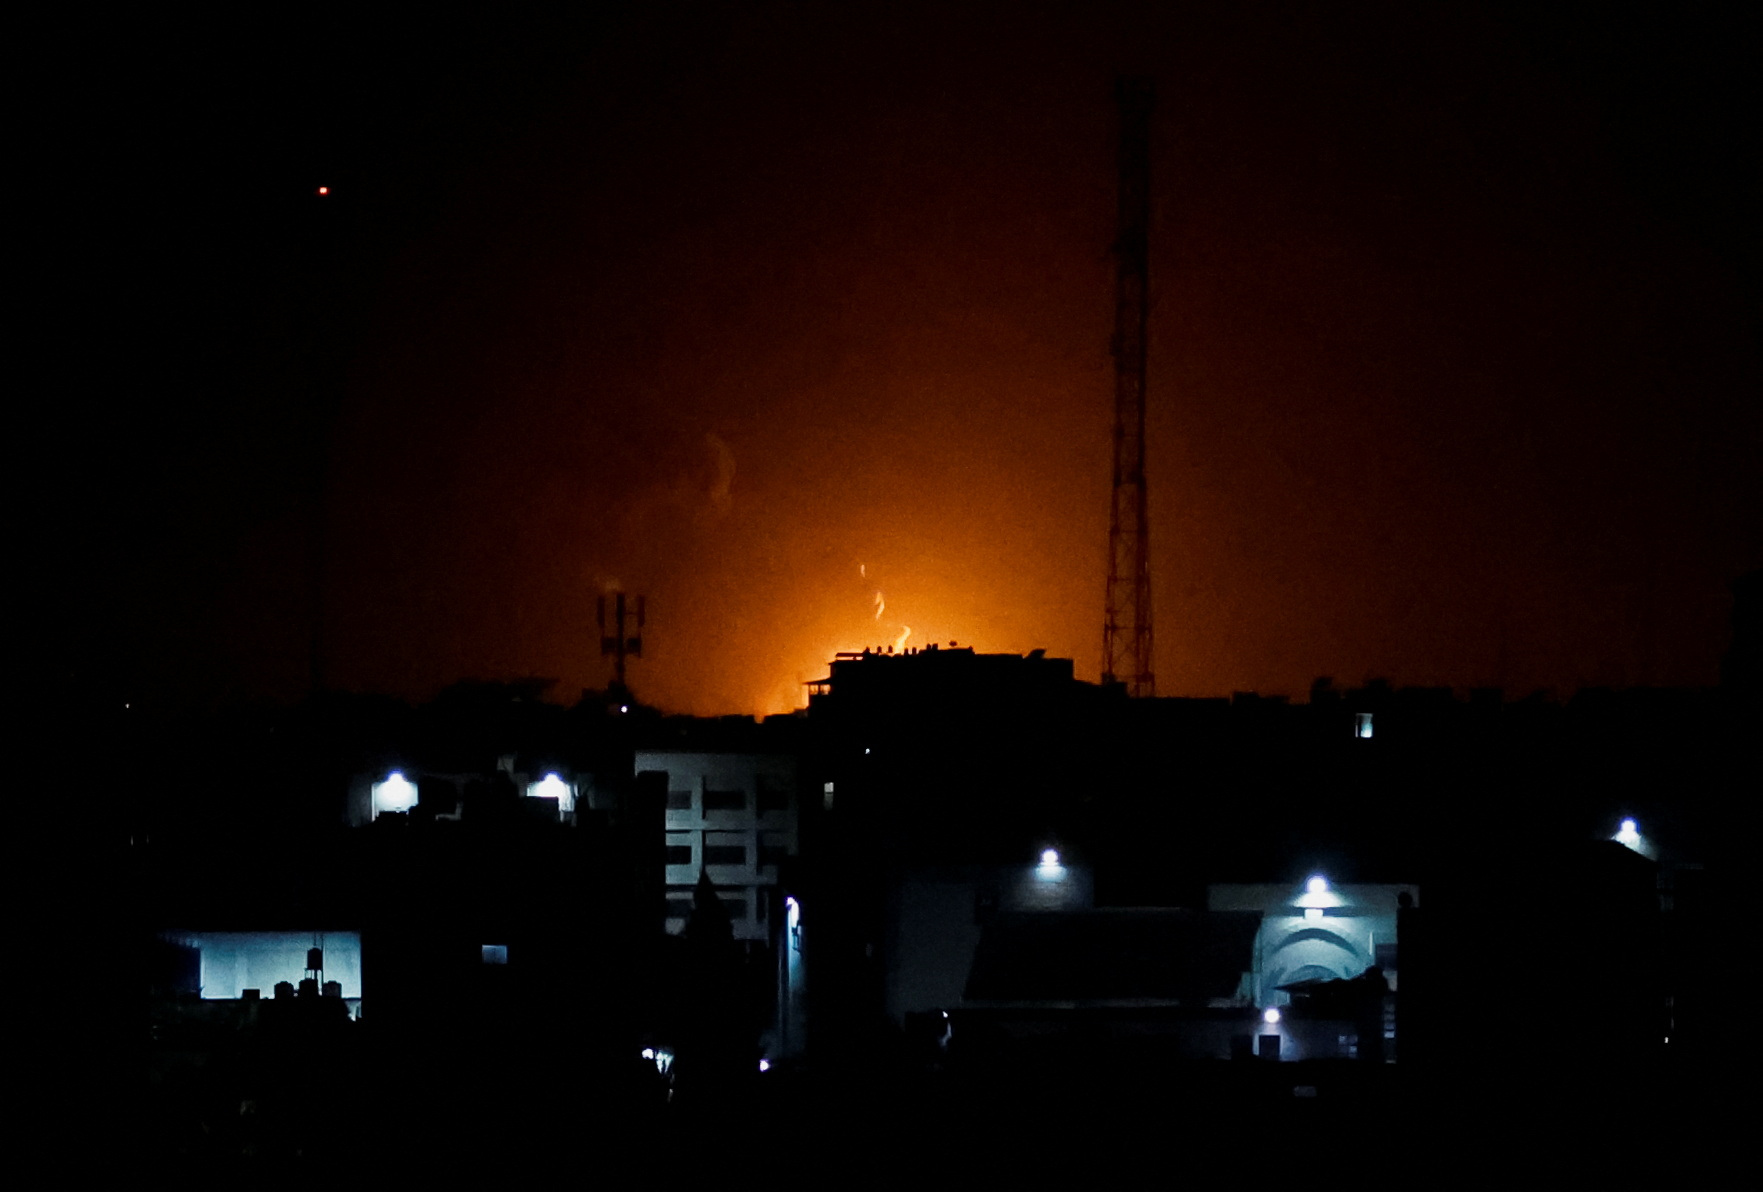 Durante la madrugada de este jueves, Israel bombardeó la Franja de Gaza como represalia por varios cohetes lanzados desde el enclave costero, informó el Ejército israelí, (REUTERS)